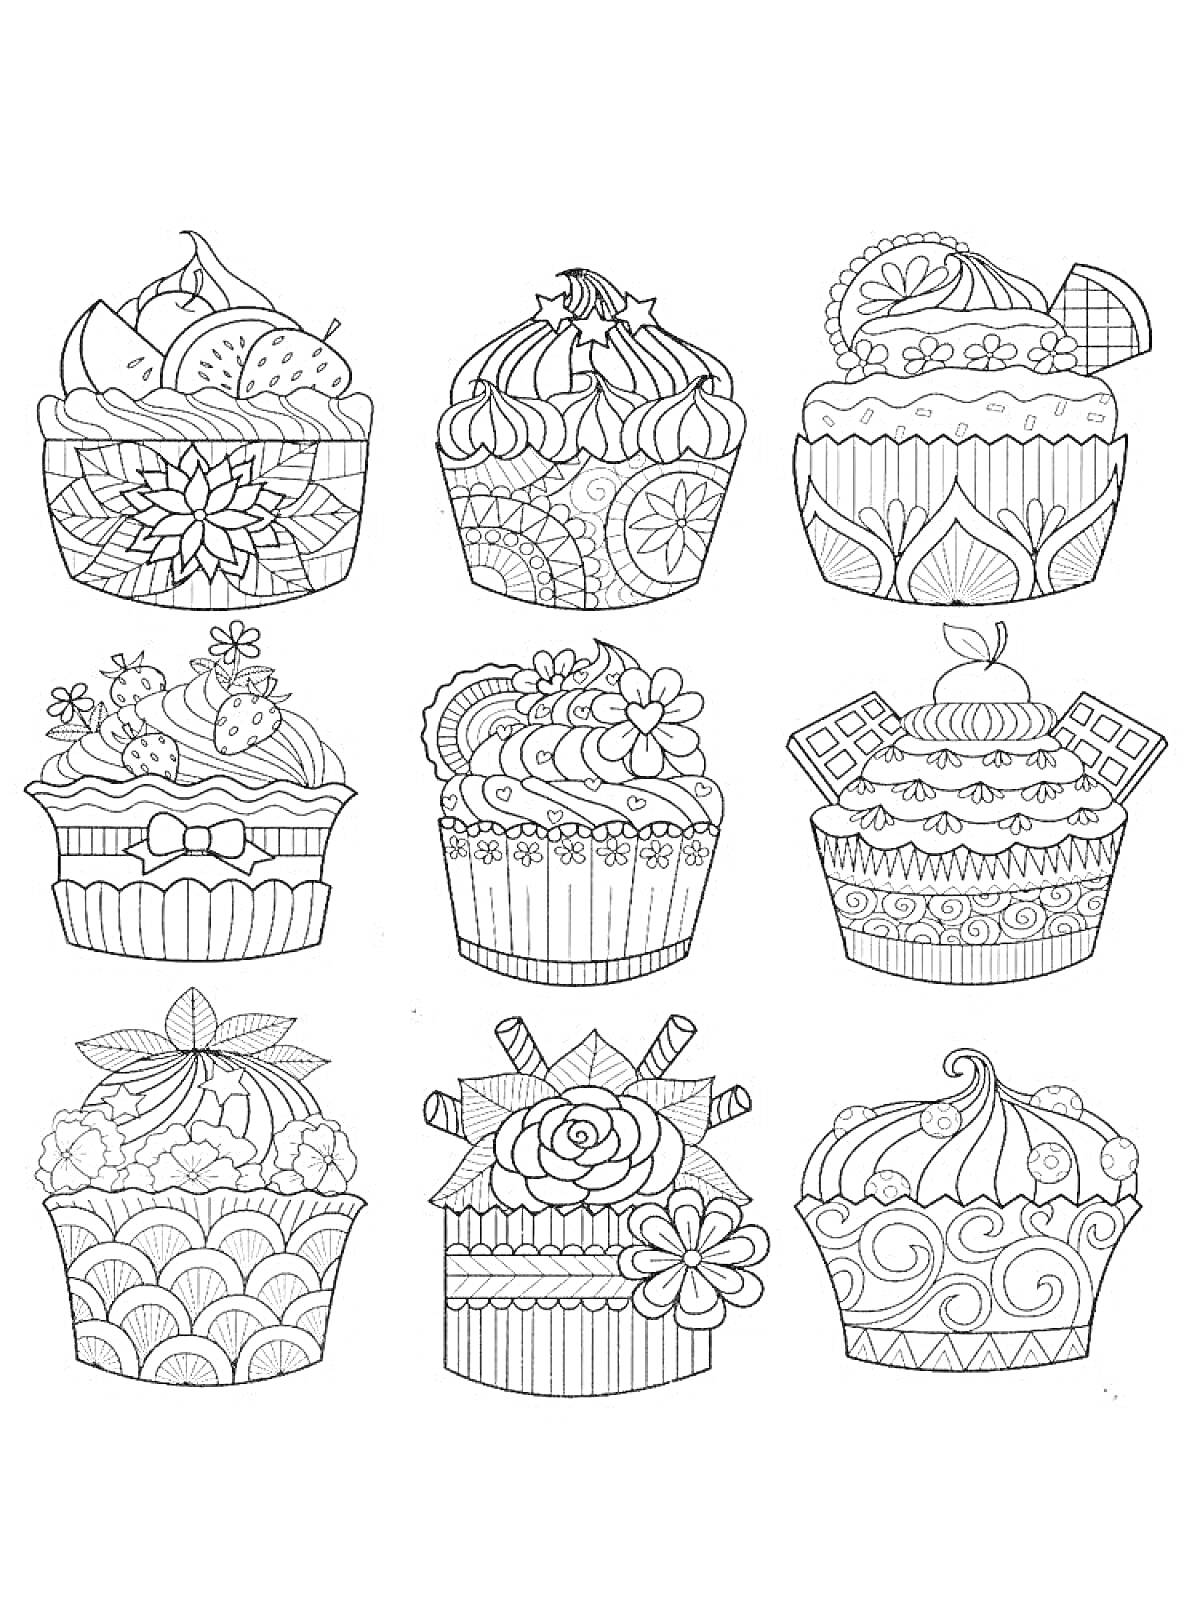 Раскраска Раскраска с кексами — три ряда по три кекса, каждый украшен деталями, такими как фрукты, цветы, шоколадные плитки, банты и узоры